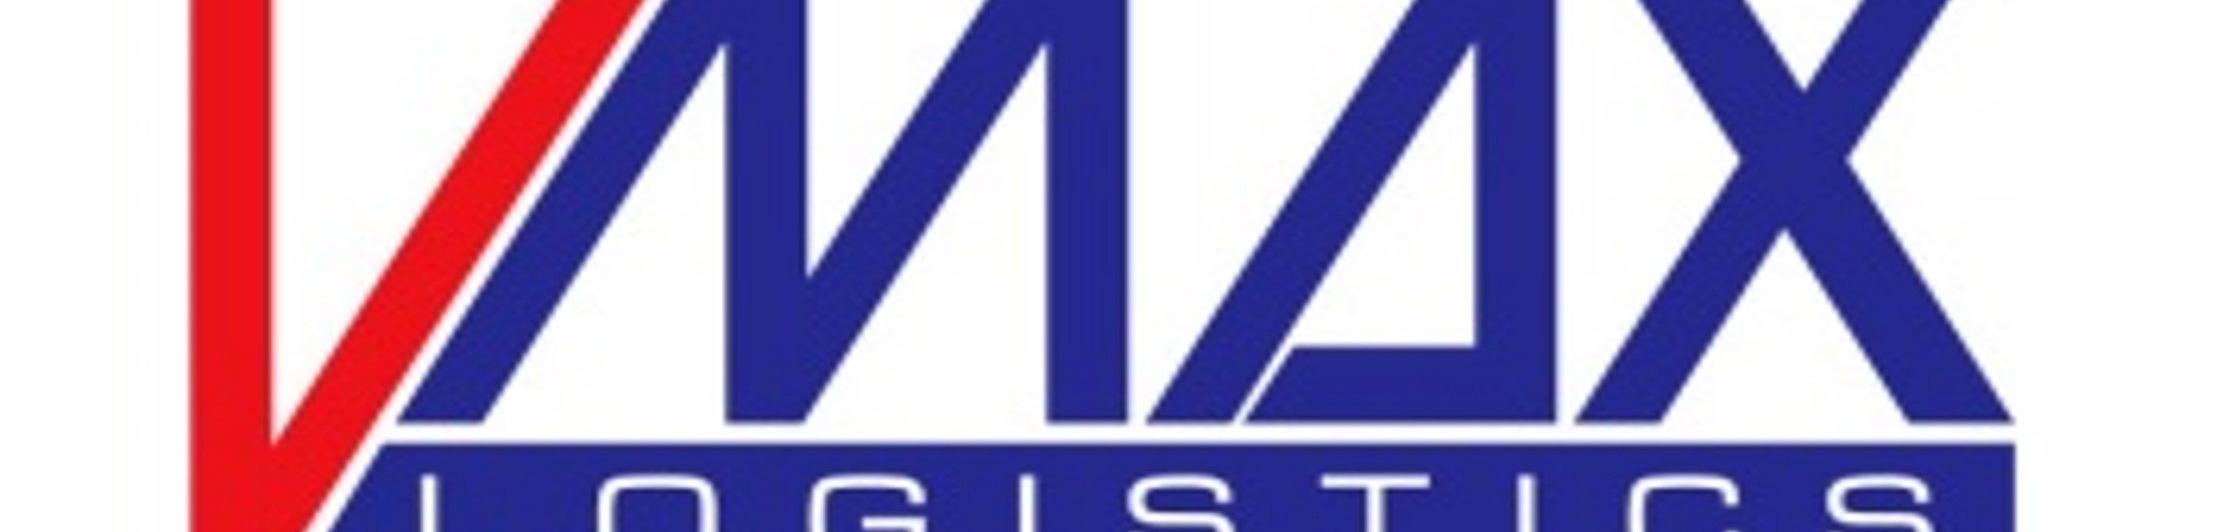 Vmax limited company